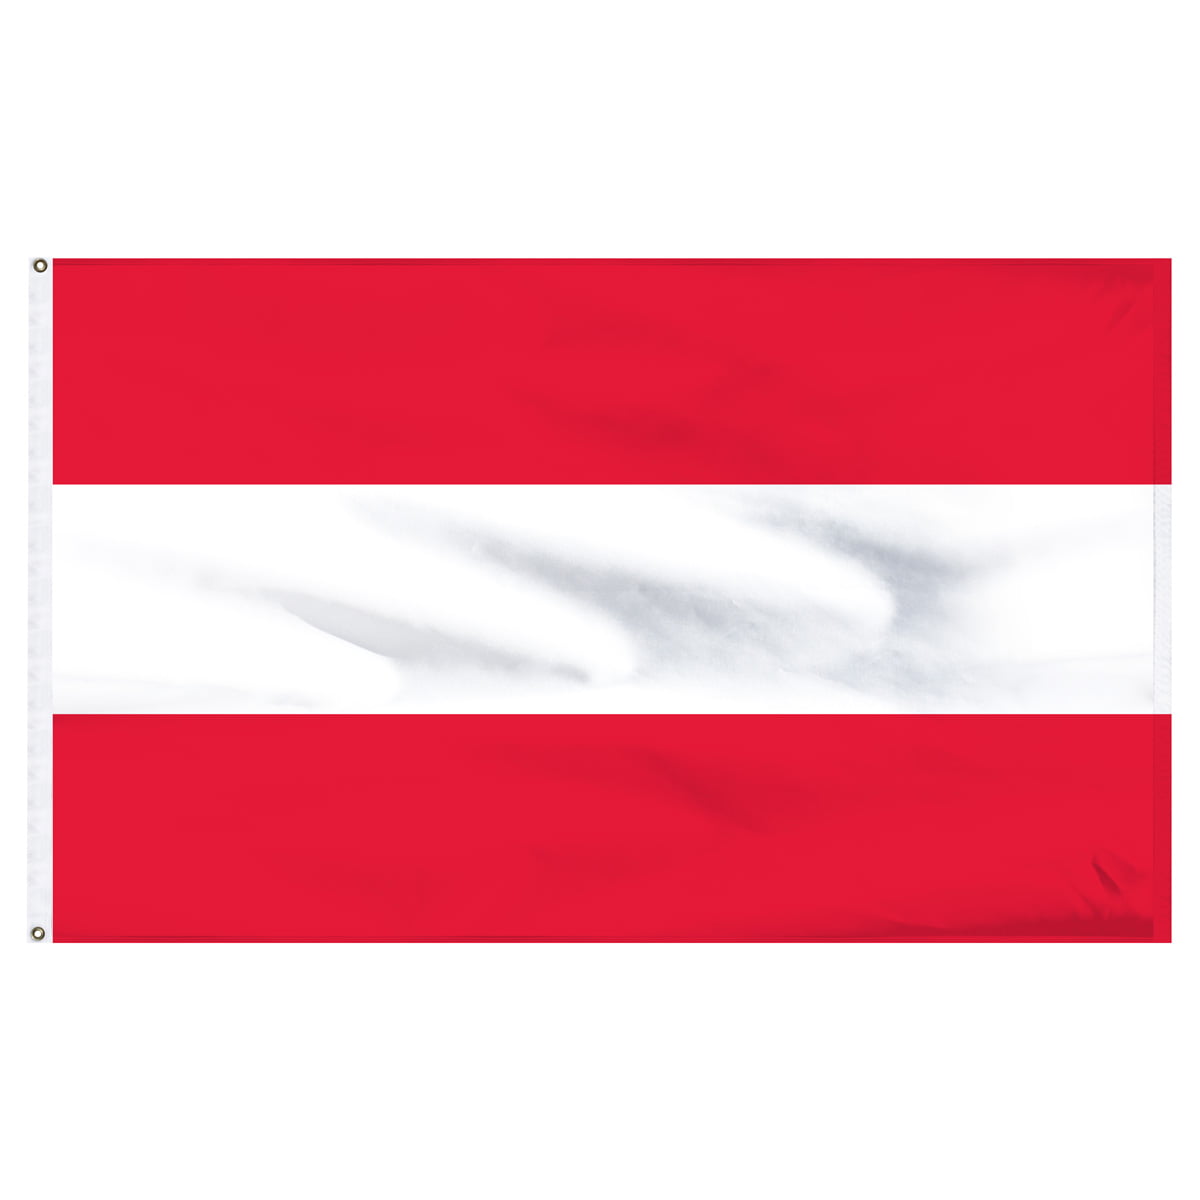 Полоски сверху и снизу. Флаг Триколор красный белый красный. Флаг Северной Австрии. Красно белый флаг. Бело-красно-белый флажок.